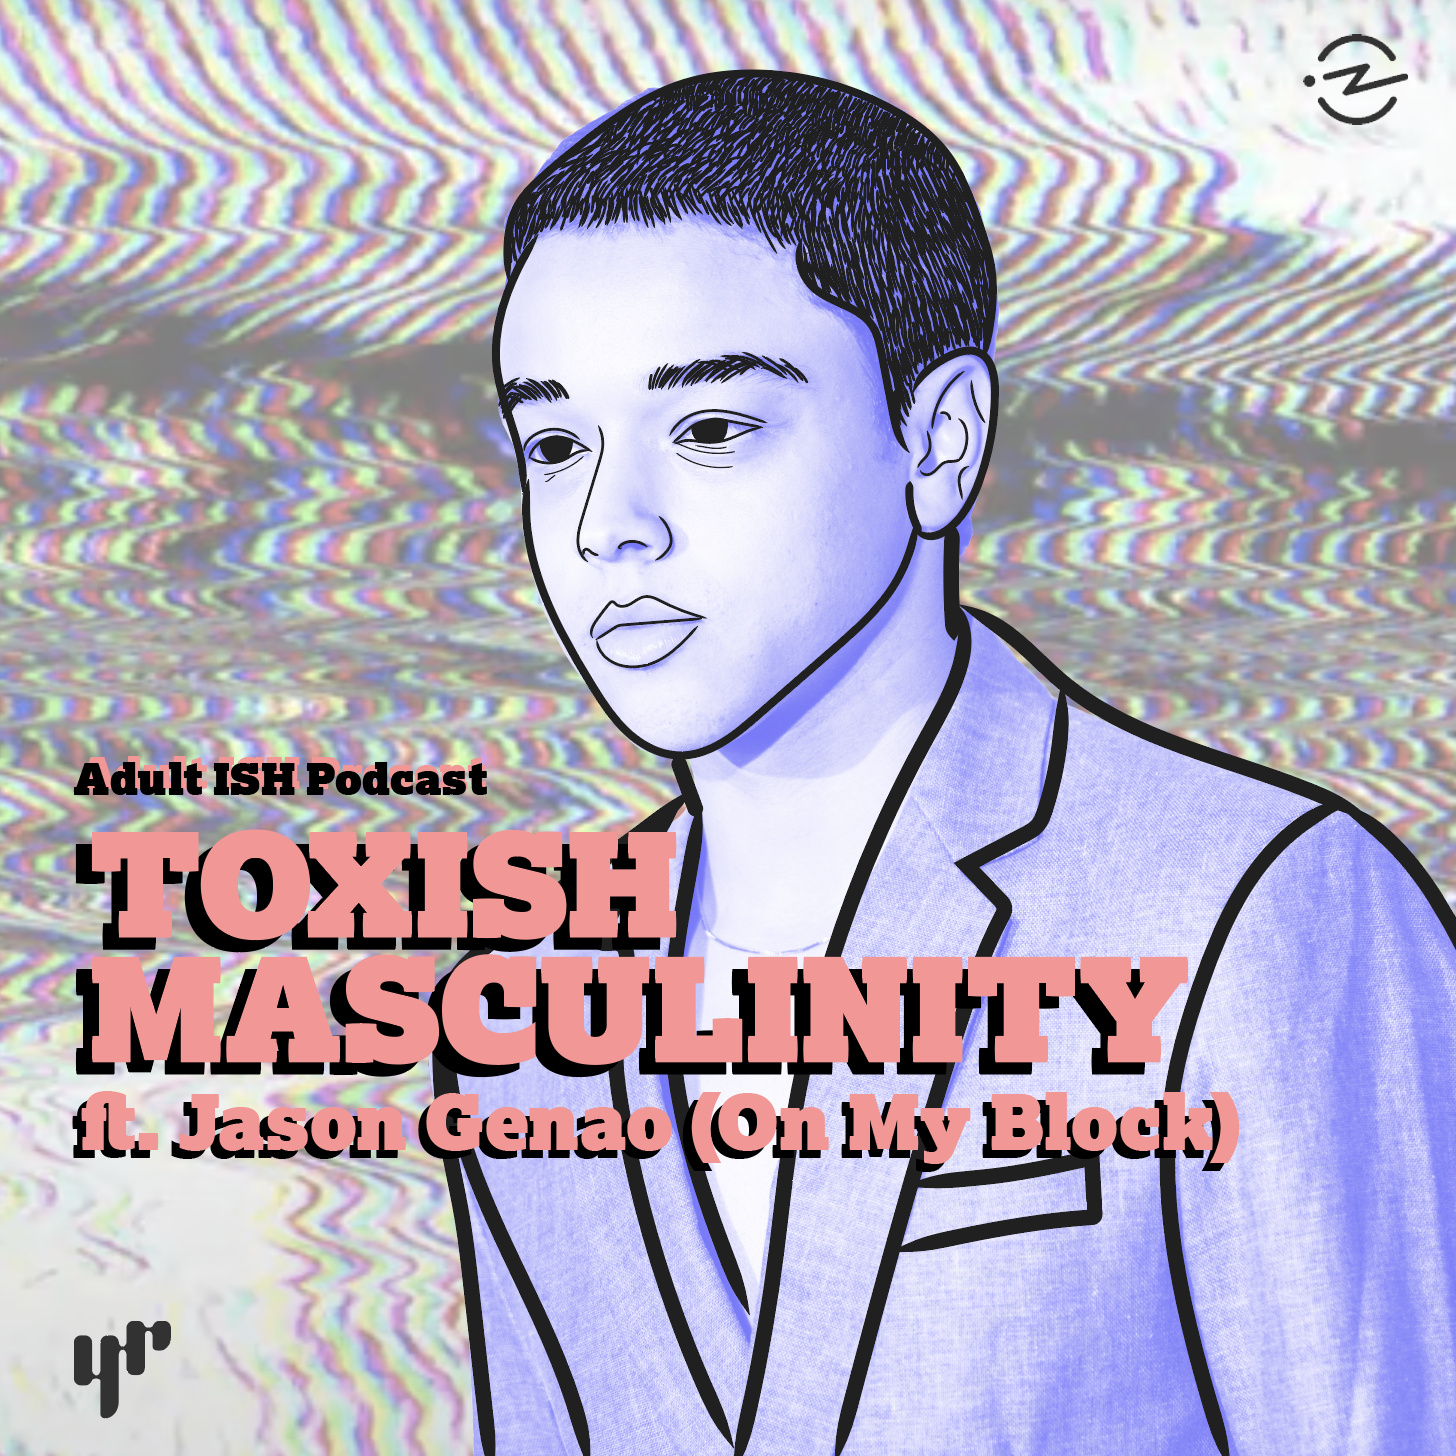 ToxISH Masculinity (ft. Jason Genao/Ruby from On My Block)